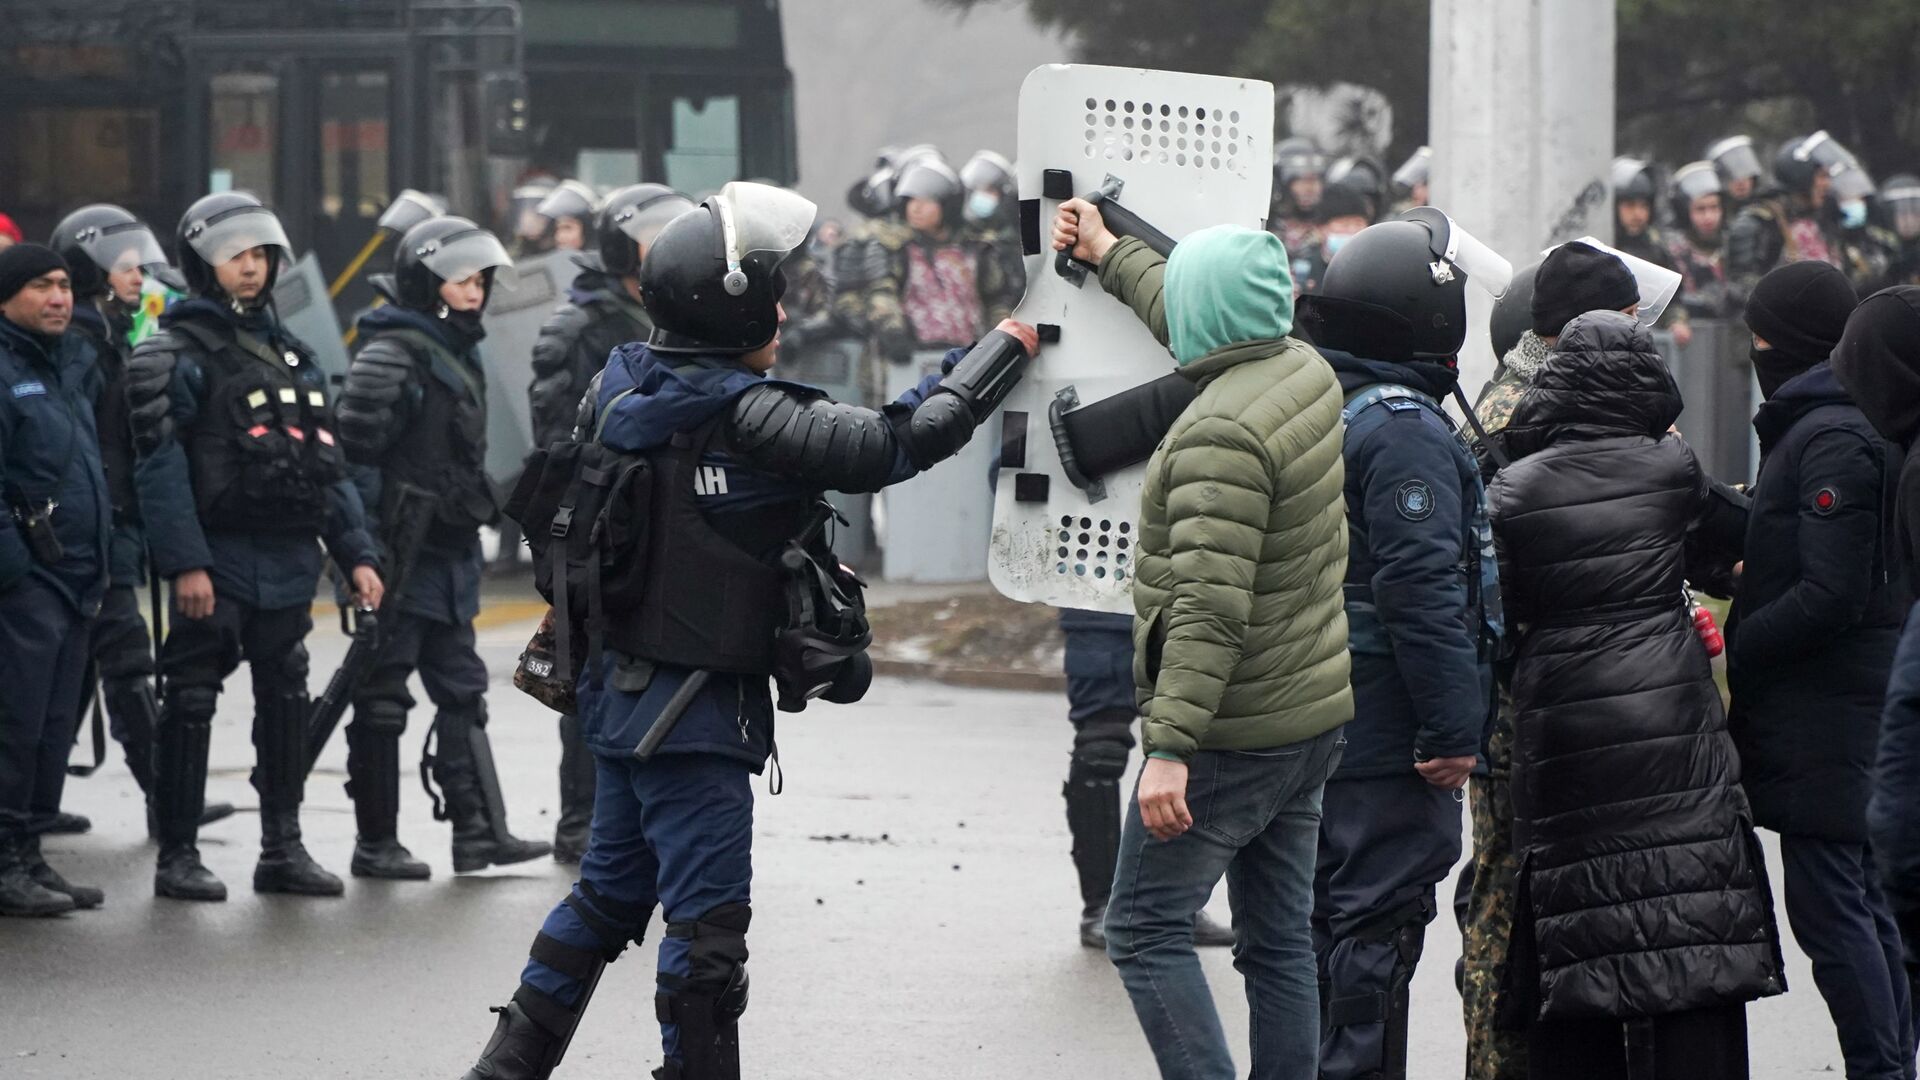 Демонстрант возвращает щит сотруднику ОМОНа во время акции протеста в Алматы, Казахстан, в среду, 5 января 2022 г.  - Sputnik Казахстан, 1920, 08.06.2022